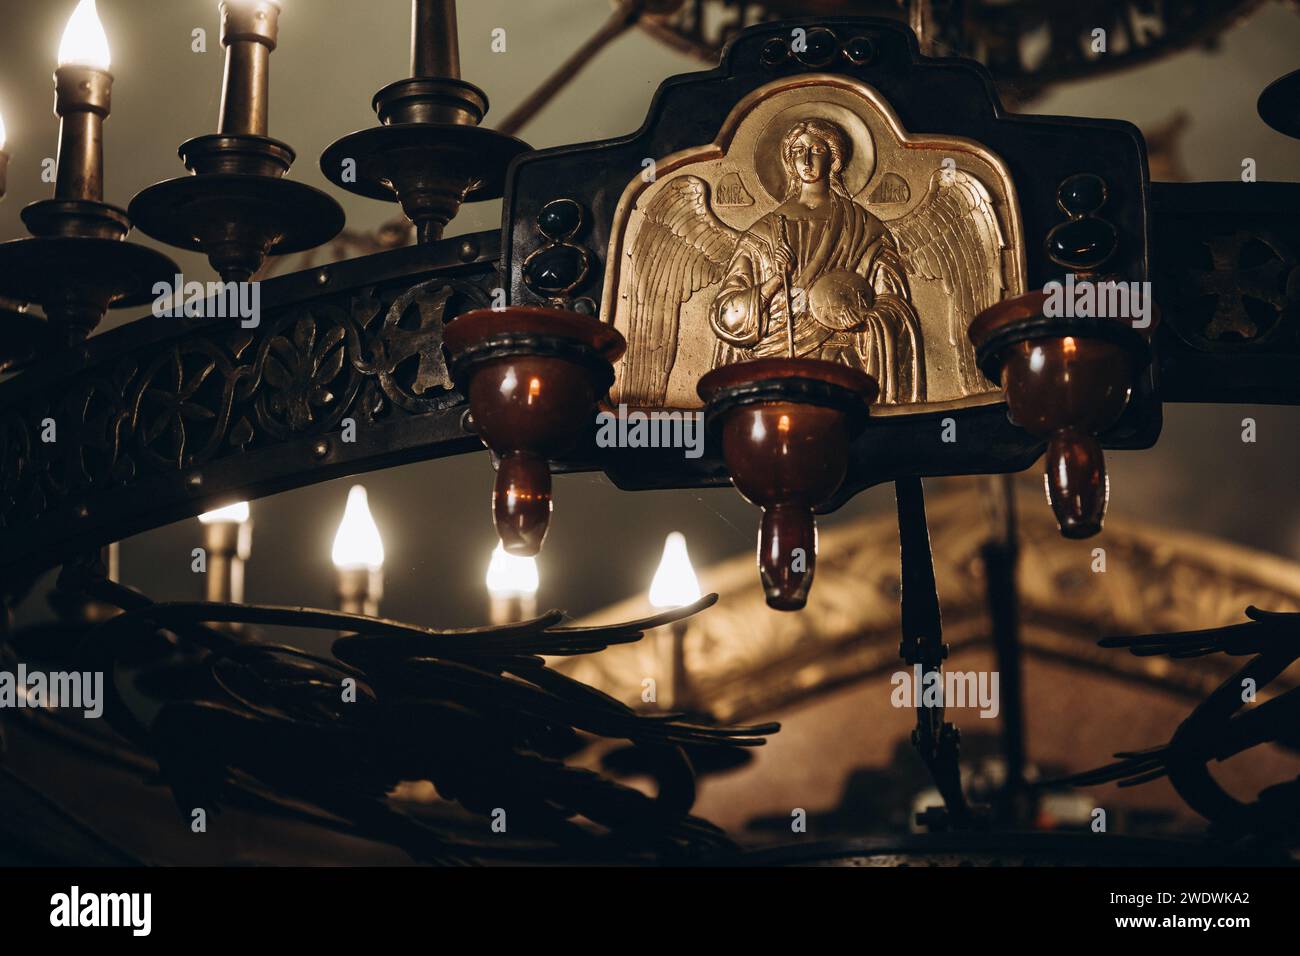 la lampada dell'icona nella chiesa è appesa vicino all'icona. Foto di alta qualità Foto Stock